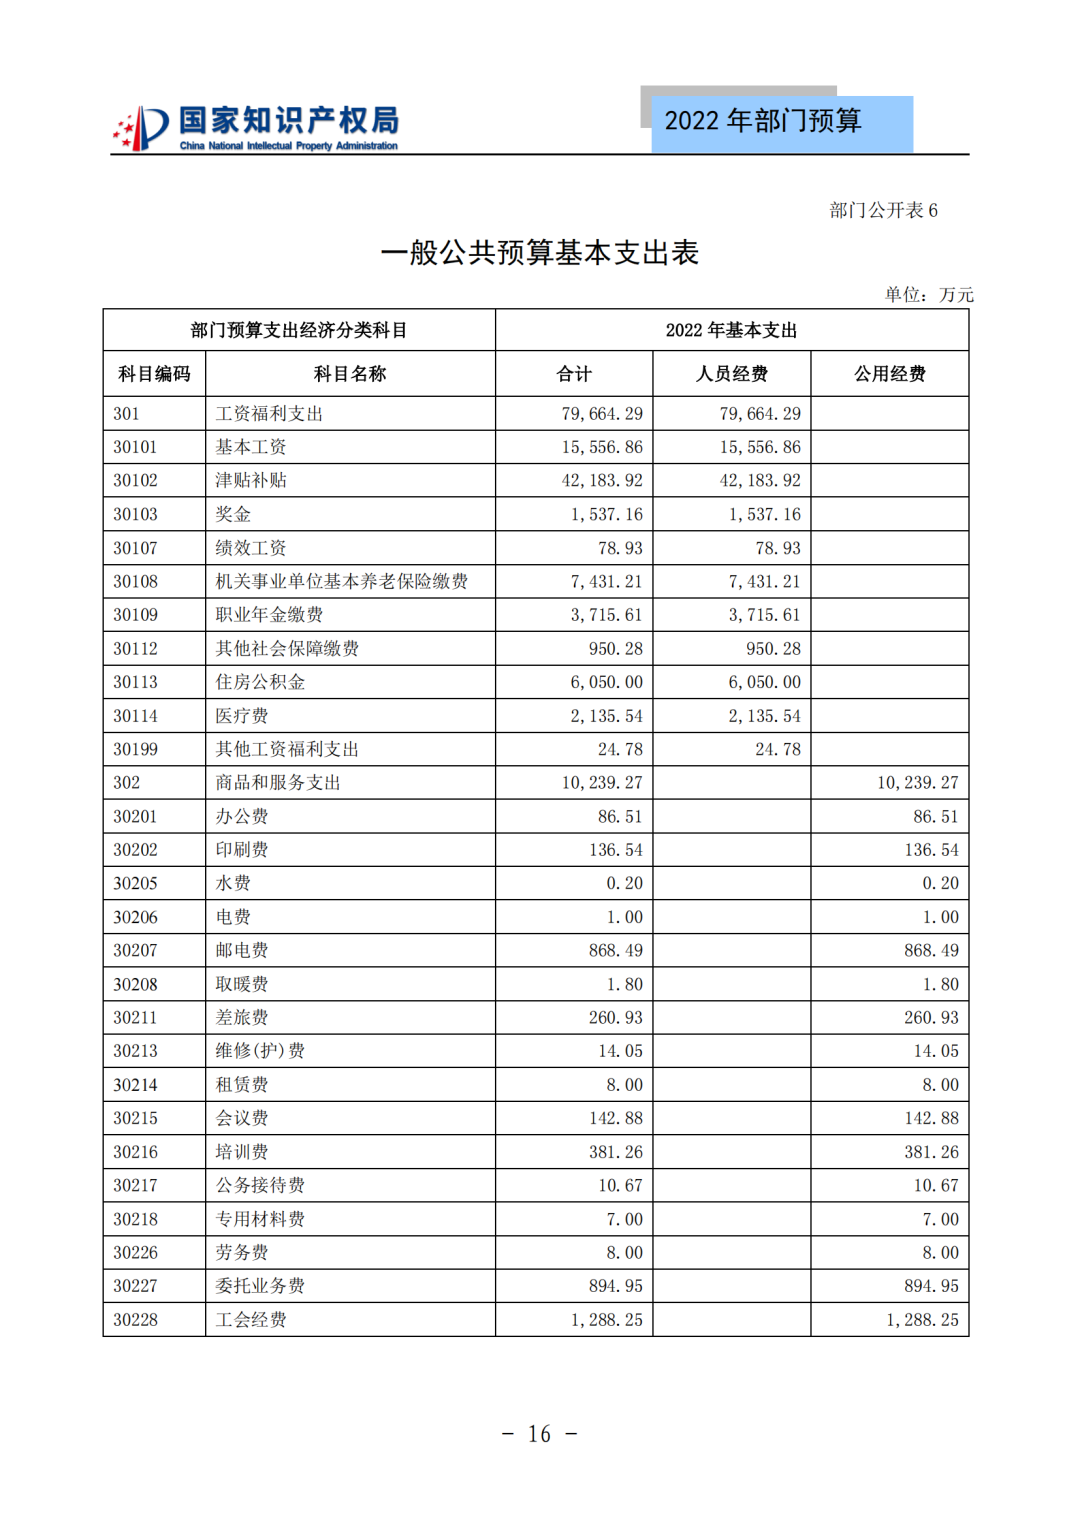 国知局2022年部门预算：专利审查费44.7亿元，评选中国专利奖项目数量≥2000项